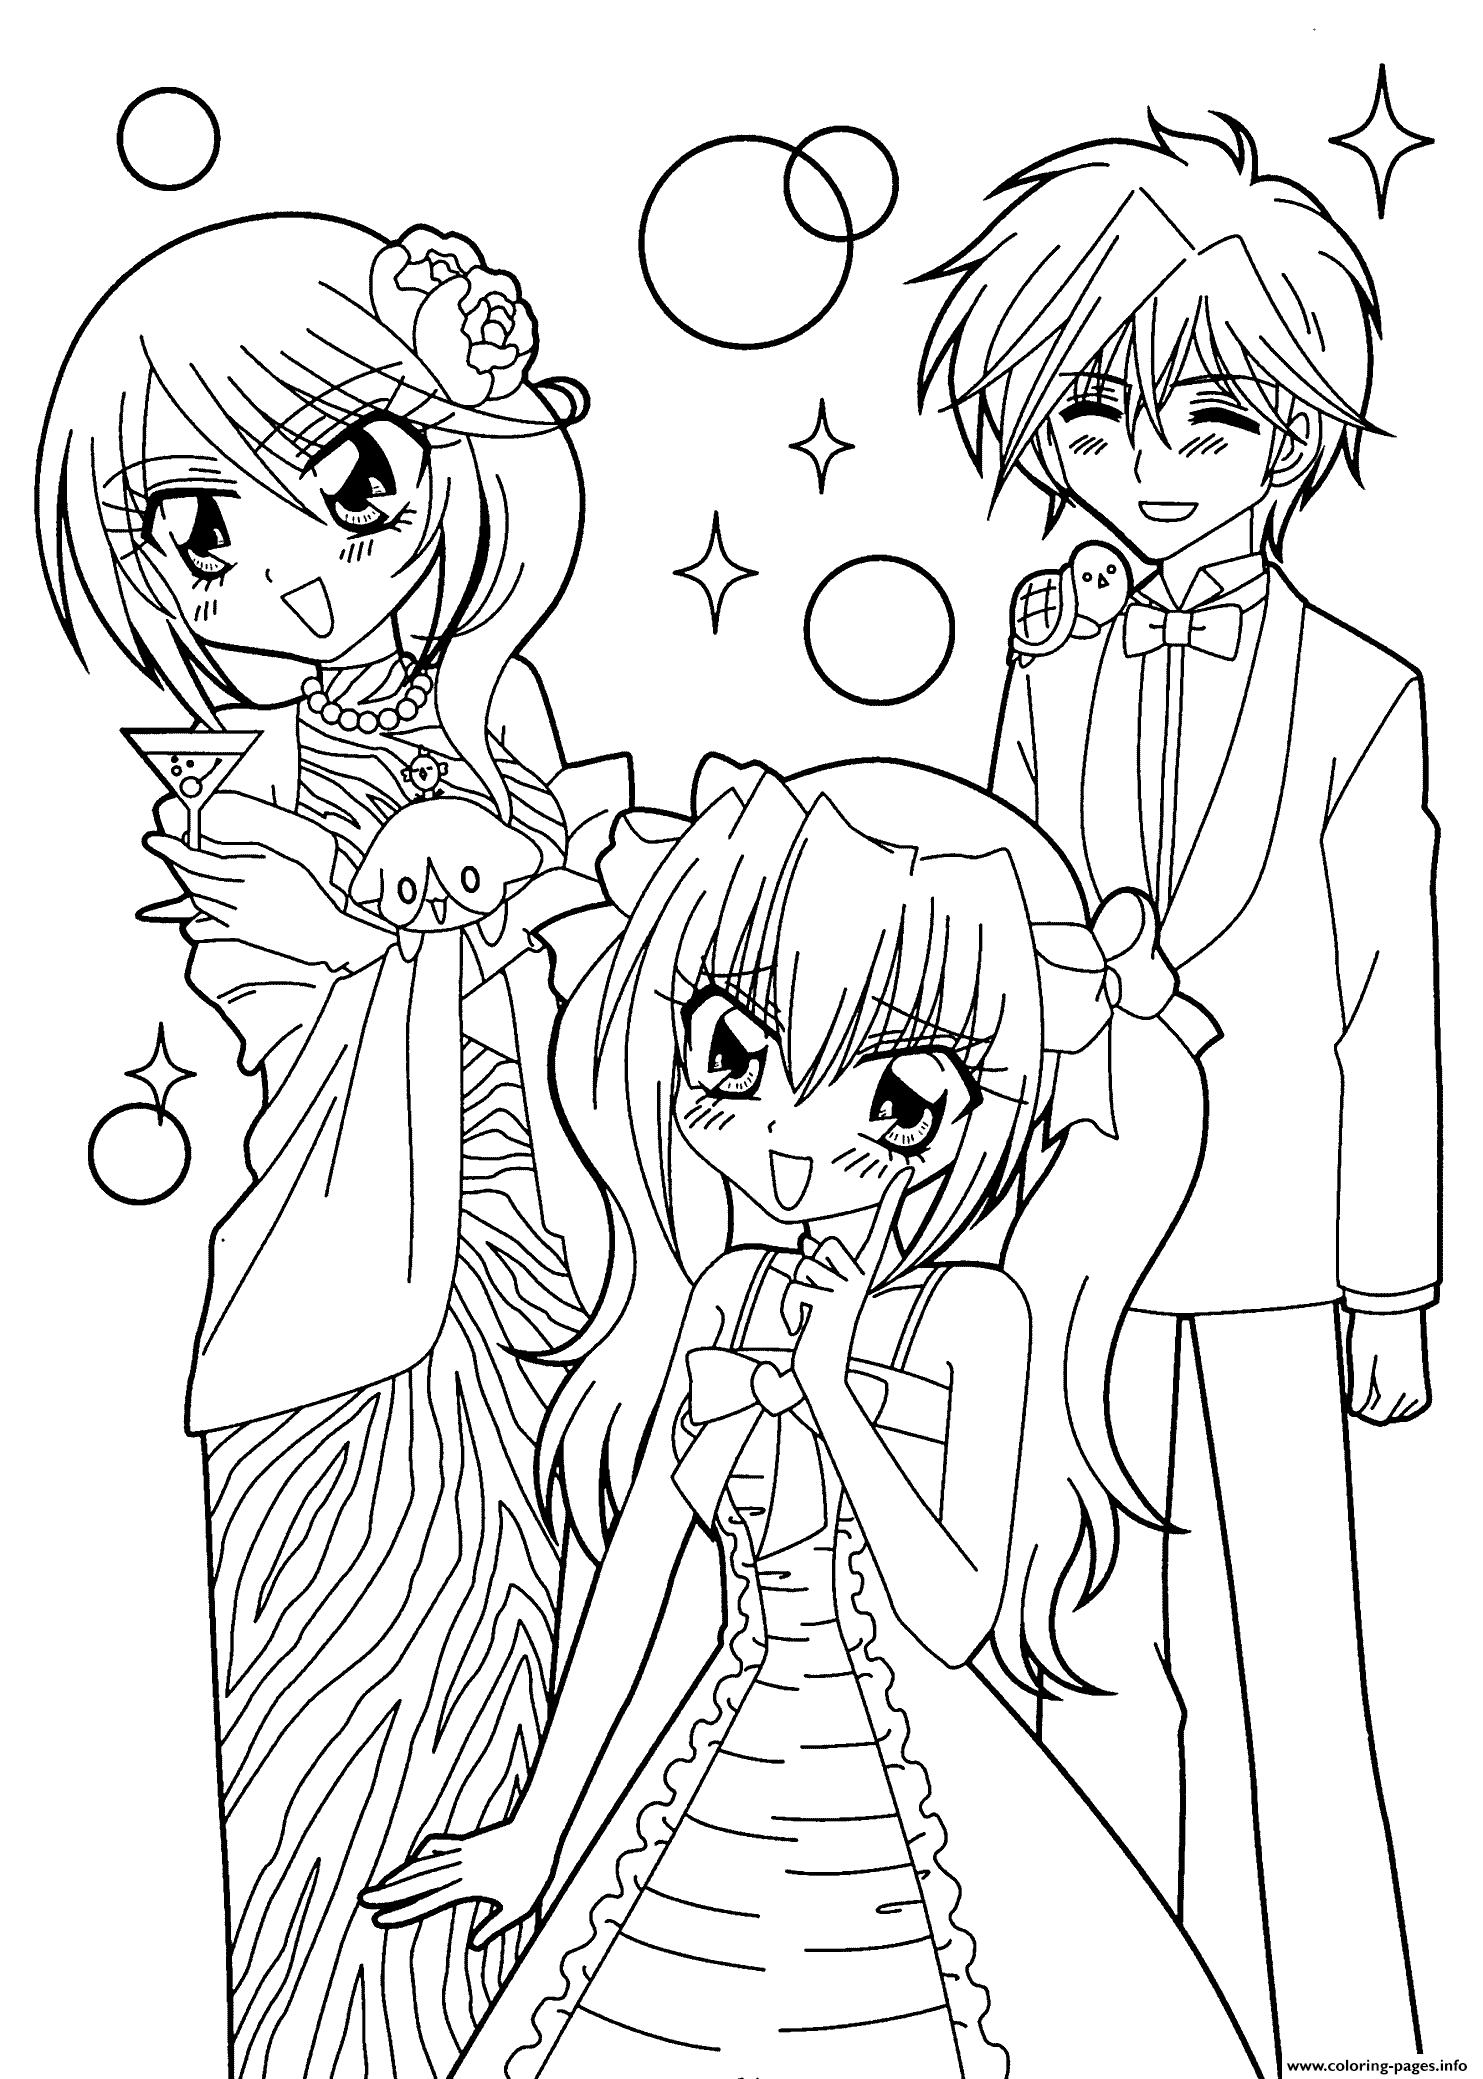 Manga Kilari Et Hiroto Anime coloring